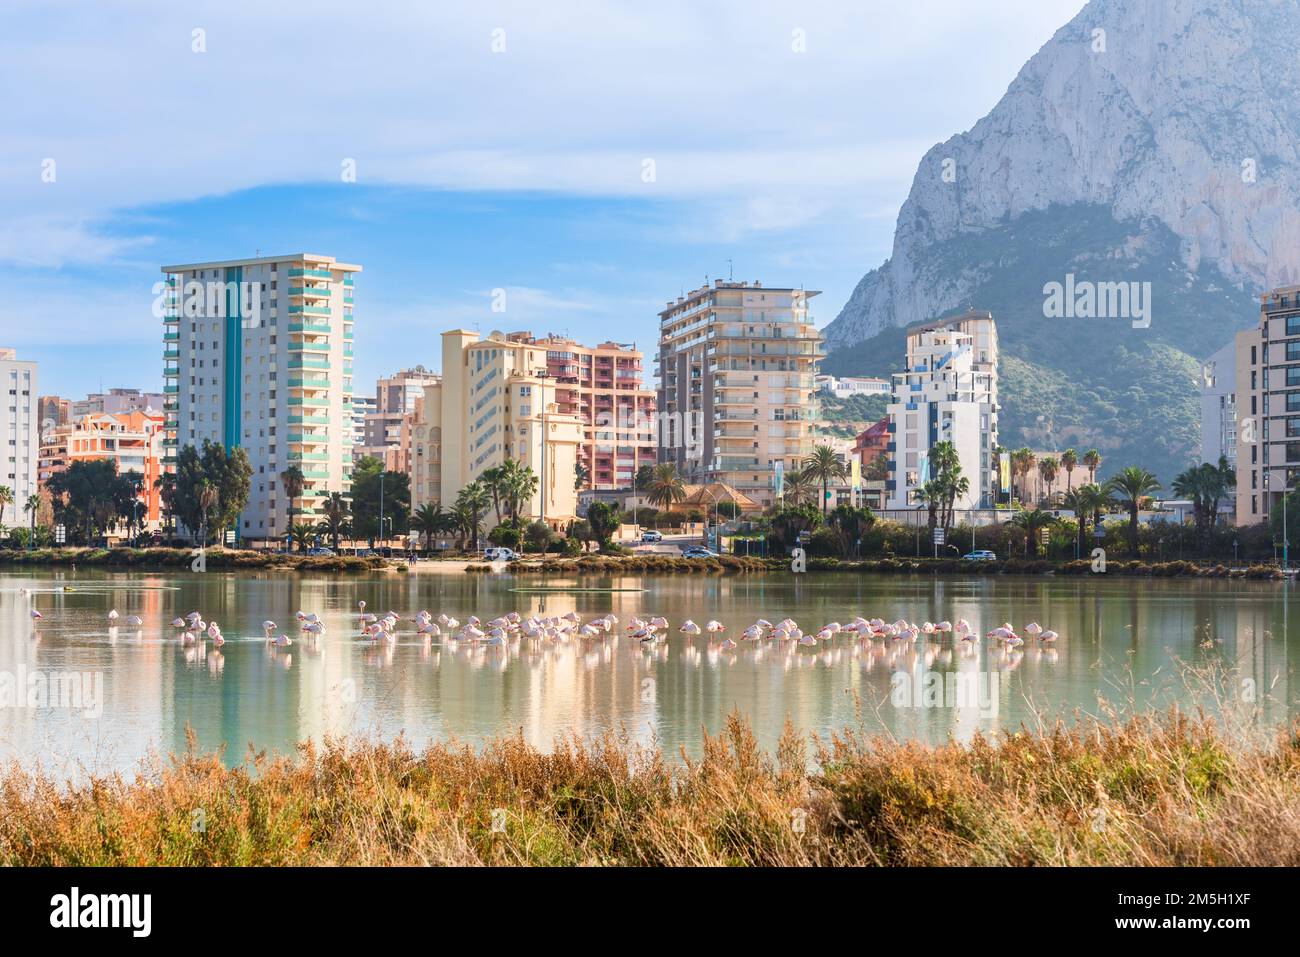 Flamingos in der Stadt. Wildtiere in städtischen Gebieten. Calp, Spanien Stockfoto